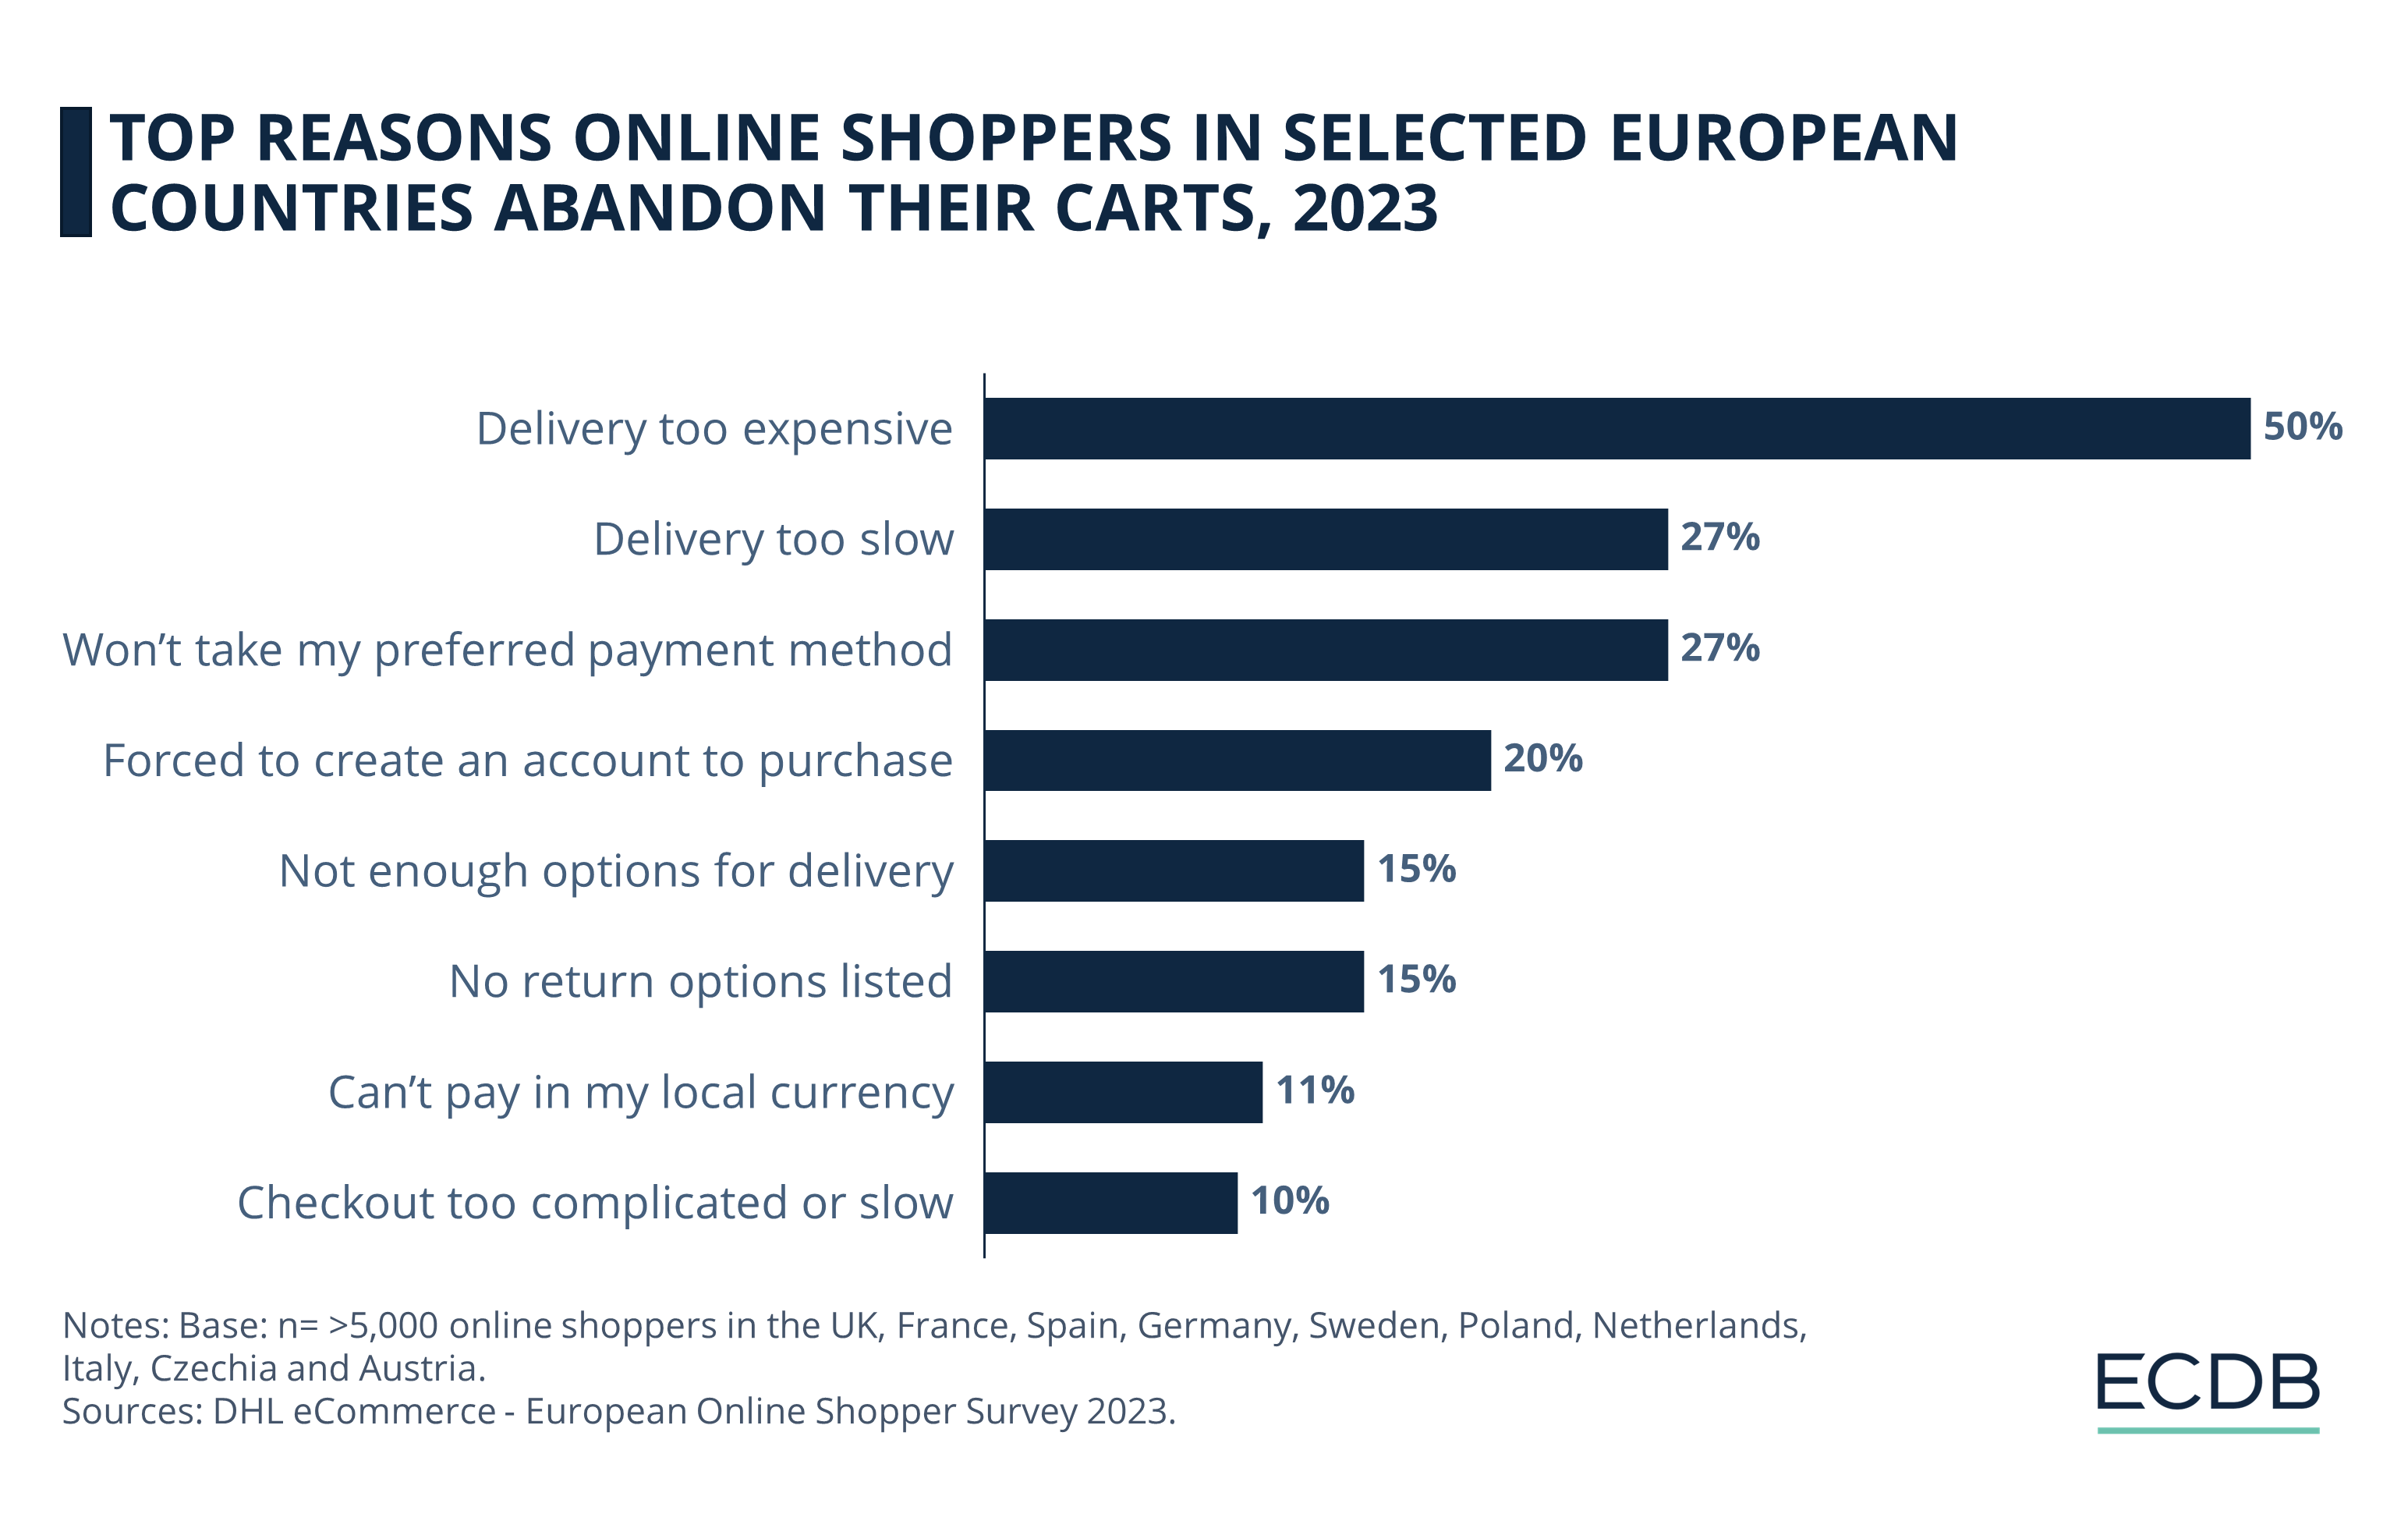 Principales razones por las que los compradores online en determinados países europeos abandonan sus carritos, 2023